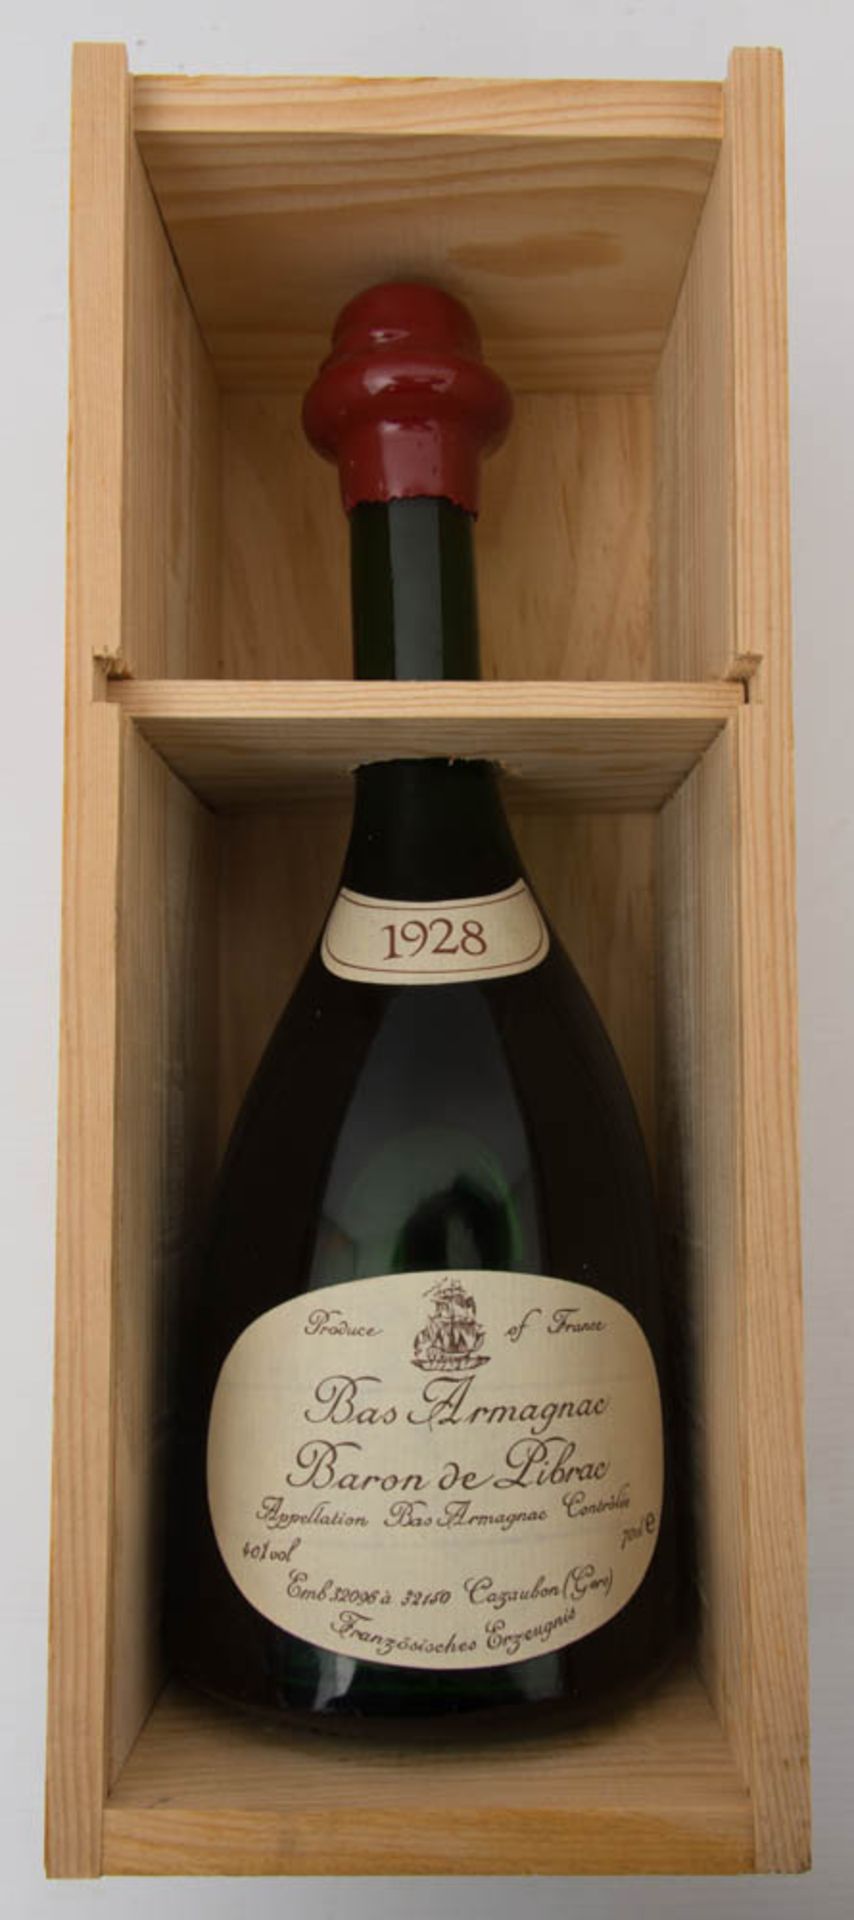 BAS ARMAGNAC, Baron de Pibrac, 1928.Im Holzkasten aufbewahrte Flasche, wohl Nachfüllung.